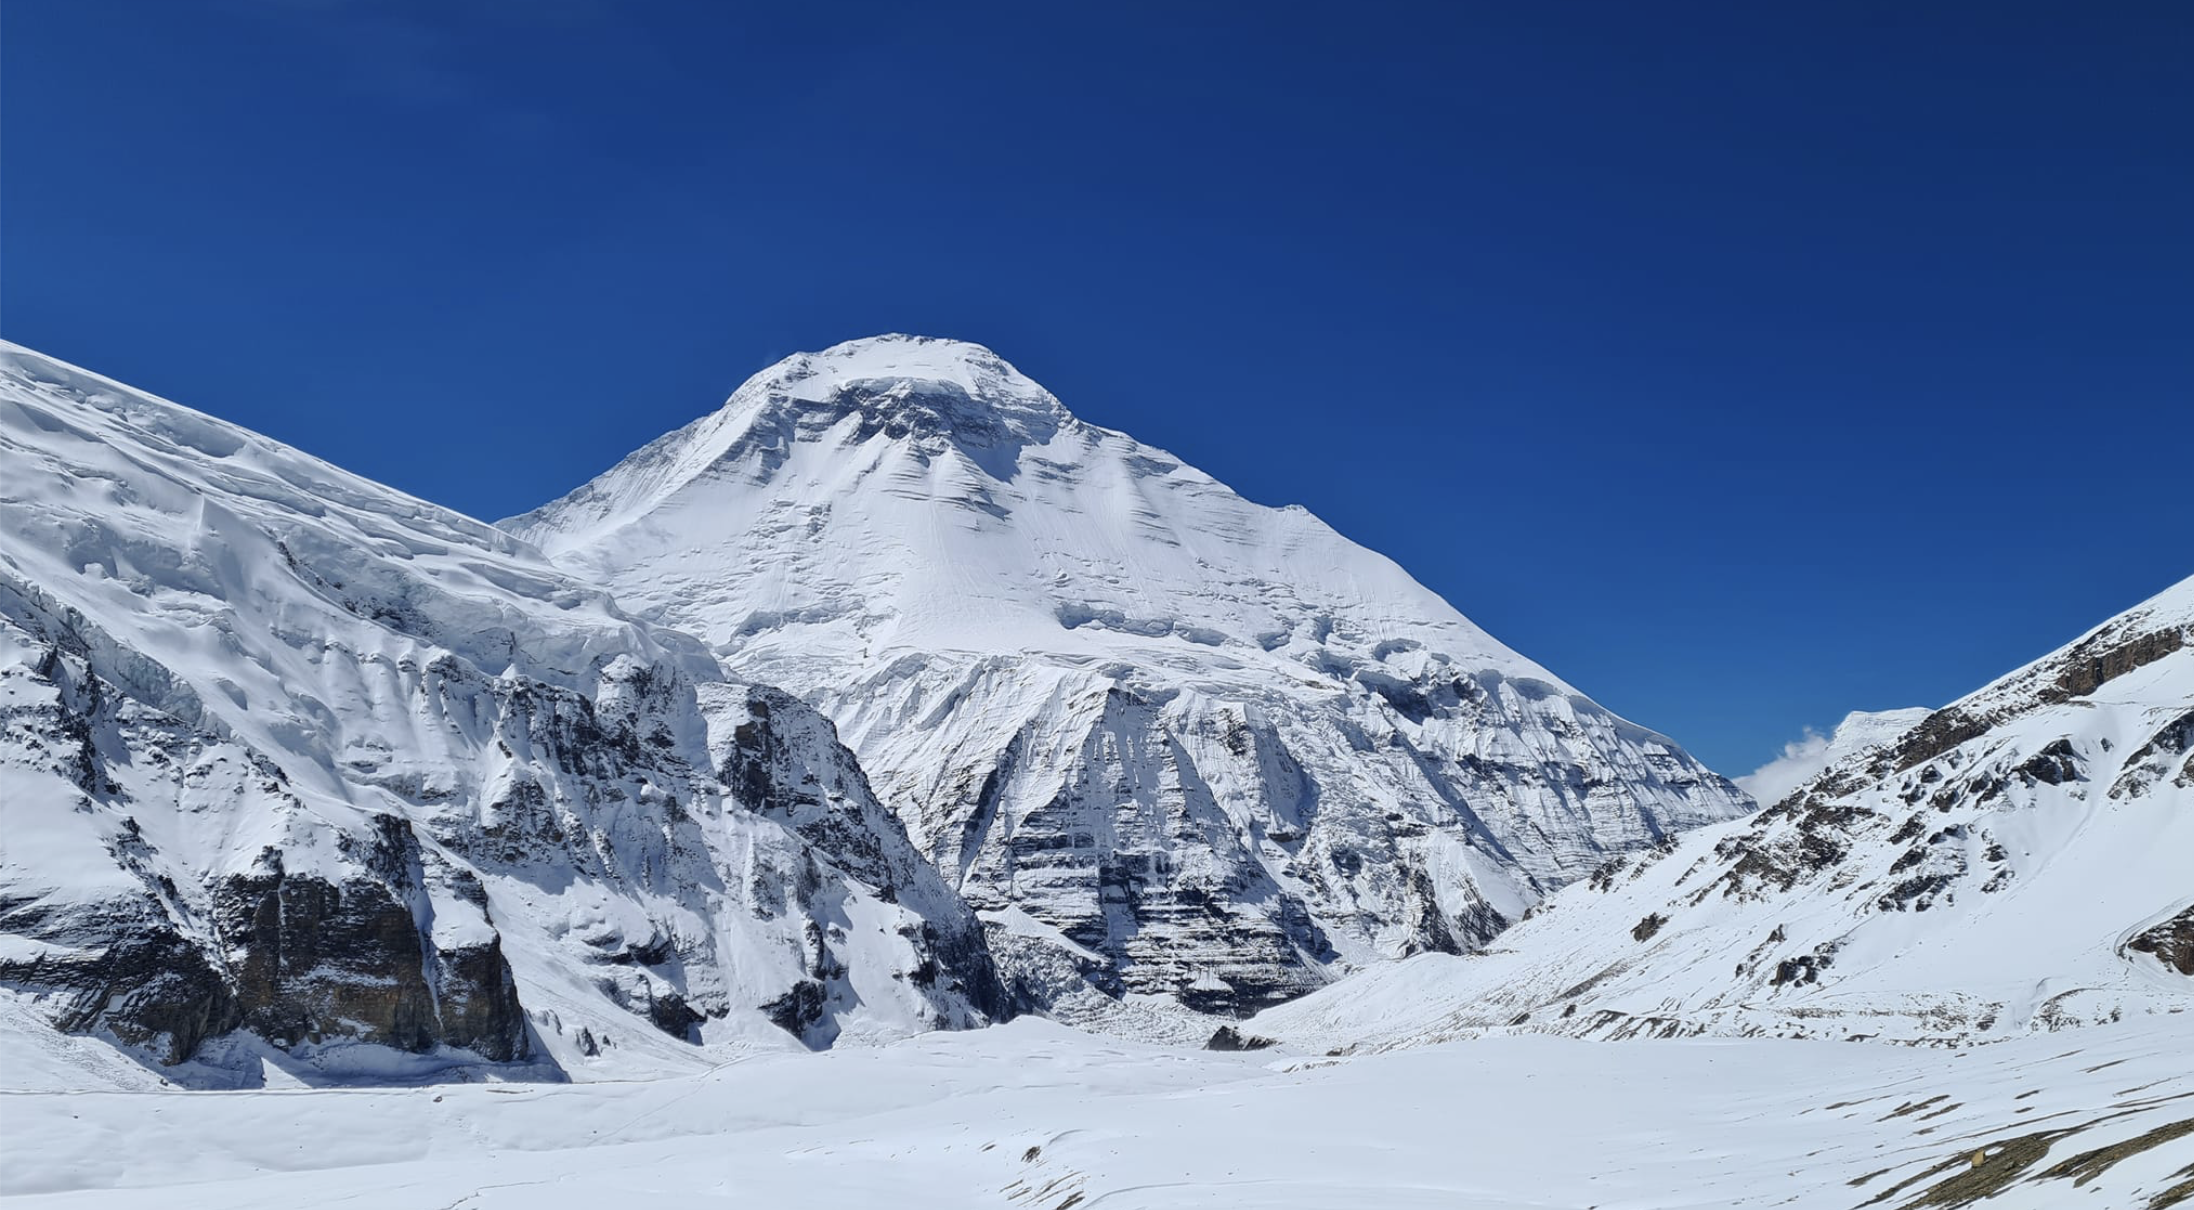 Românul mort pe Everest face parte dintr-un șir lung de tragedii misterioase. Șir de cadavre pe Munții Himalaya